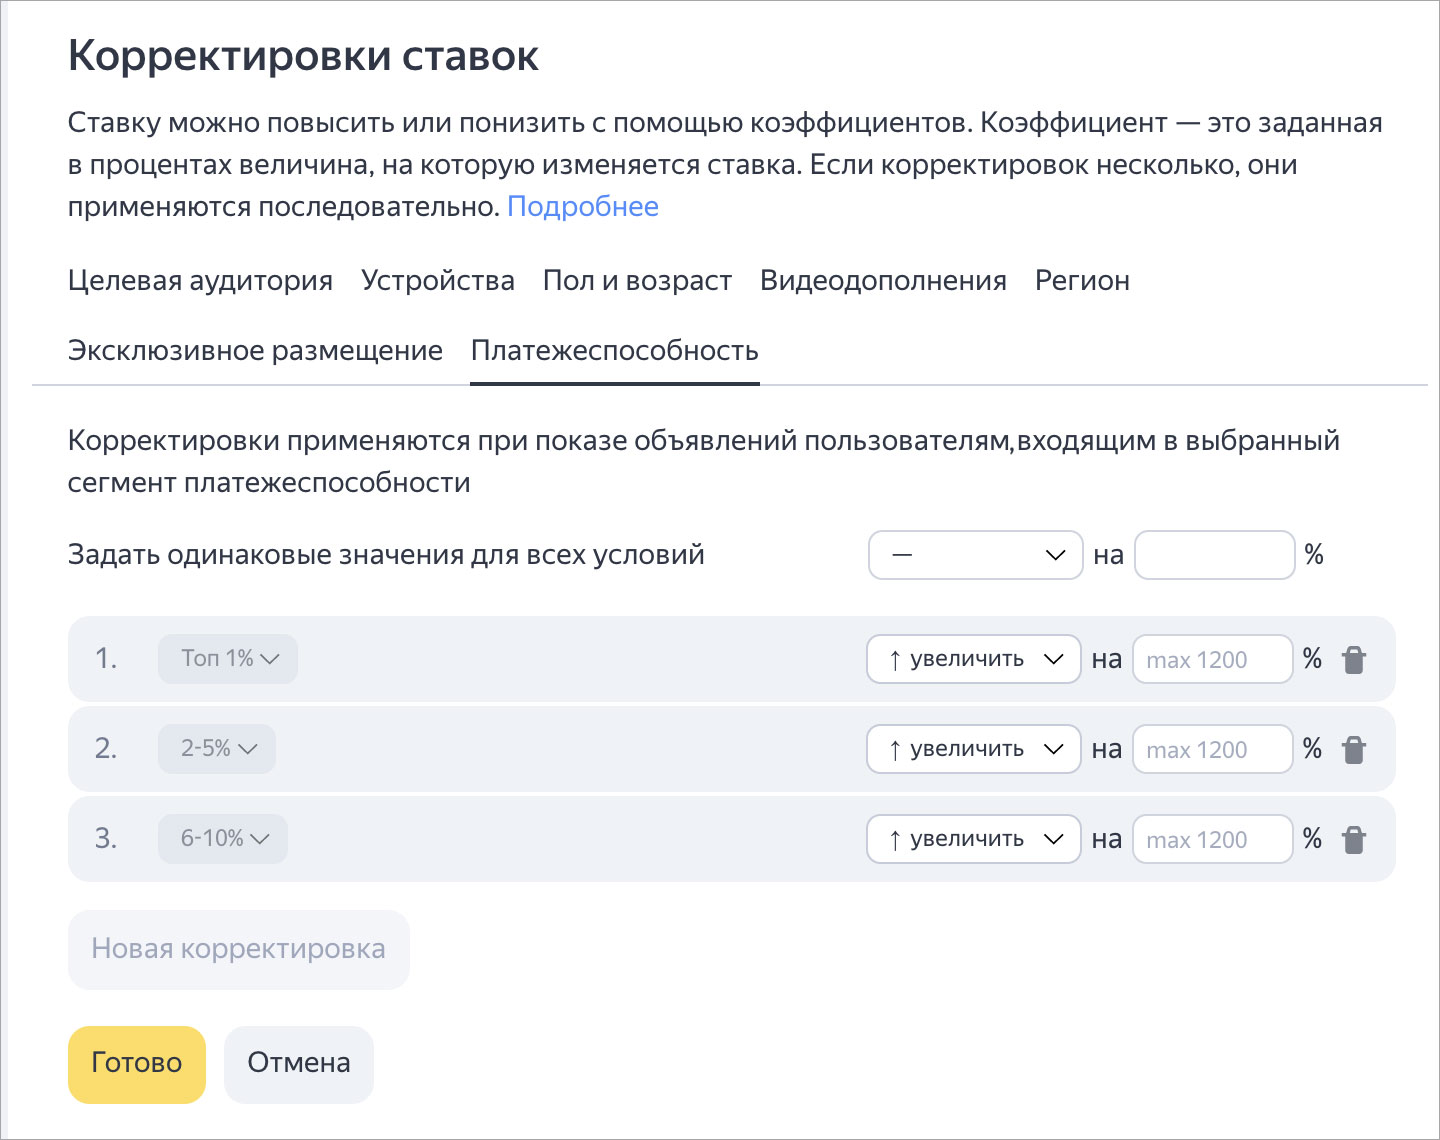 Яндекс.Директ разделил аудиторию по платёжеспособности